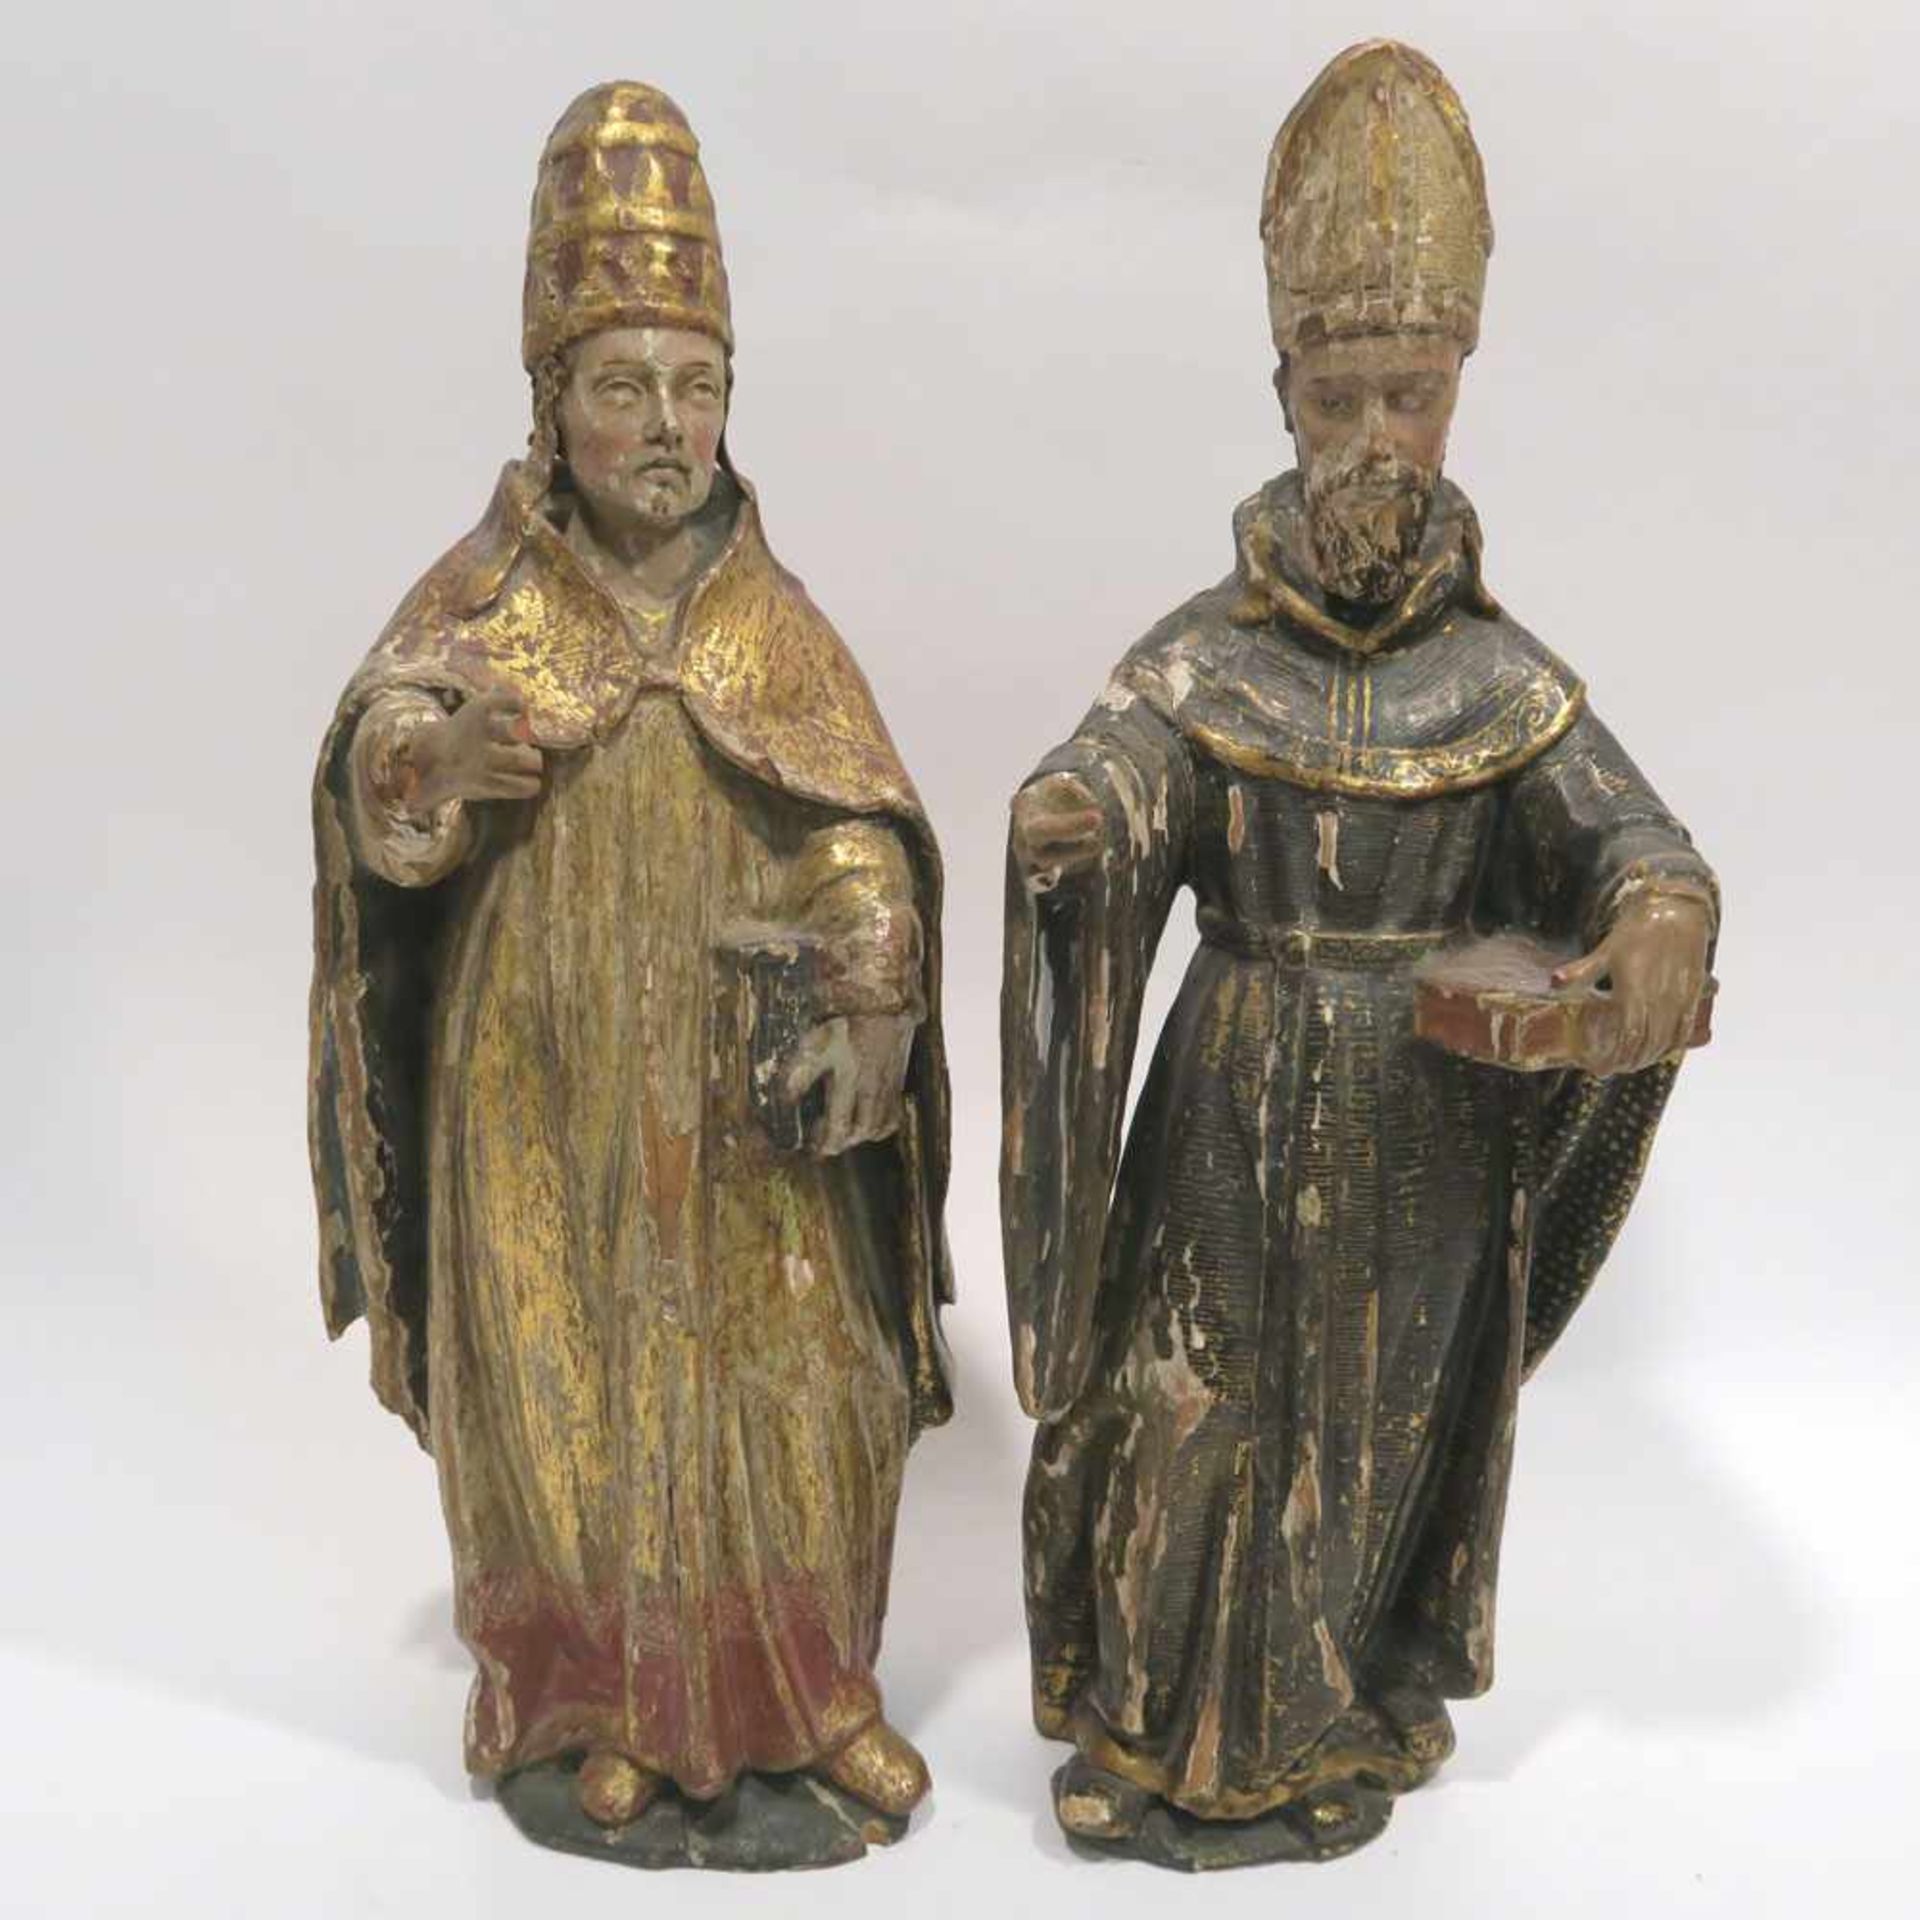 Papst Silvester I. (?) / Hl. BischofSpanien oder Italien, wohl 17. Jh. Holz, geschnitzt, Farb- und